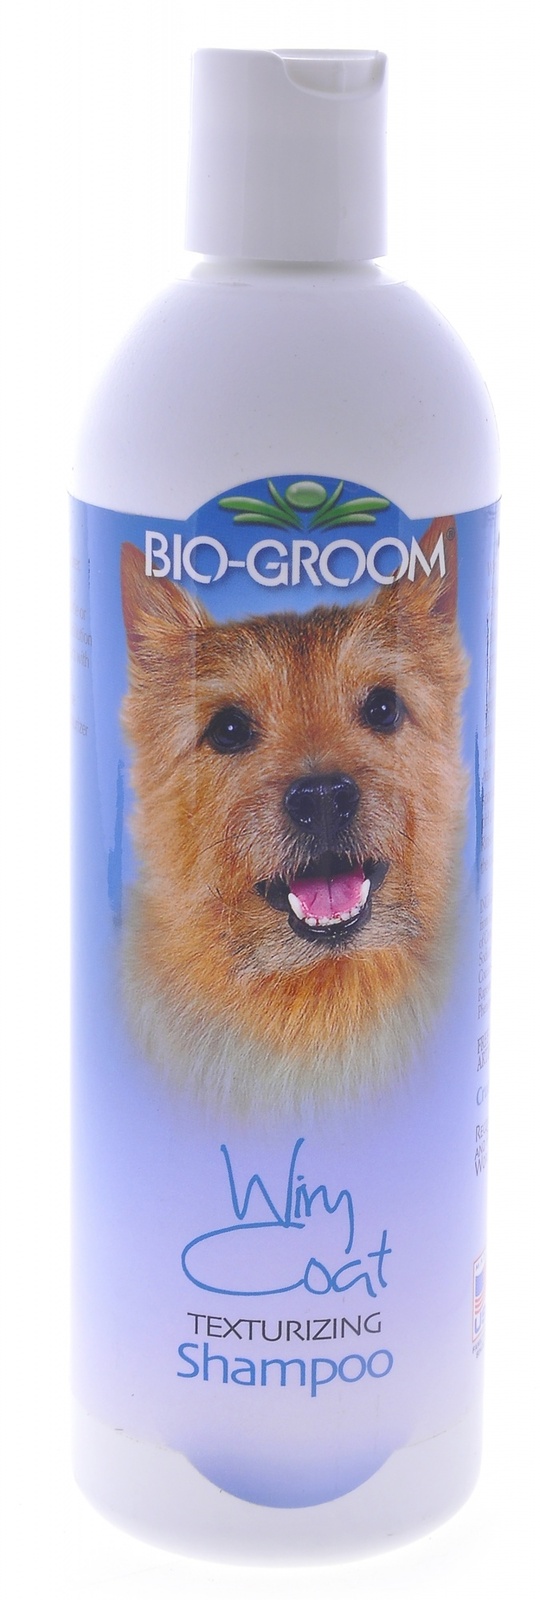 Biogroom Biogroom шампунь для жесткой шерсти, концентрат 1:4, 1.8 литра готового шампуня (355 г)